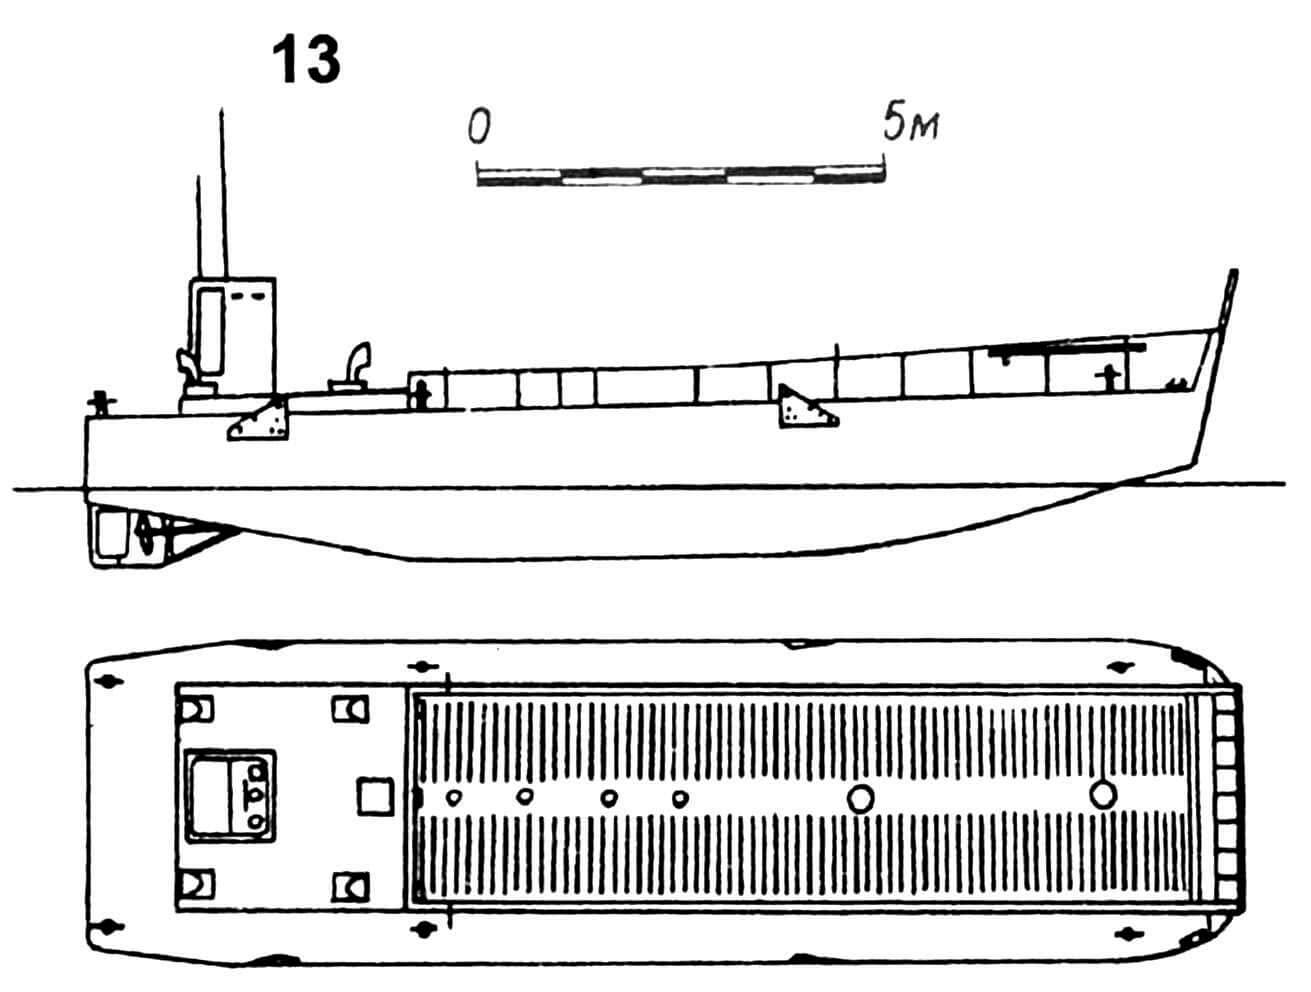 13. Десантный плашкоут типа LCM-3, США, 1942 г. Водоизмещение пустого 23 т, в грузу 52 т. Длина 15,3 м, ширина 4,3 м, осадка наибольшая 1,2 — 1,3 м. Два дизеля общей мощностью 330 л.с., скорость 8 — 9 узлов. Вооружение: два 12,7-мм пулемета. Вместимость: один 30-тонный танк или 60 солдат. Всего построено 8631 ед. в США и 150 близких по типу LCM-7 в Англии. 6 ед. английской постройки в 1945 г. переданы по ленд-лизу СССР.